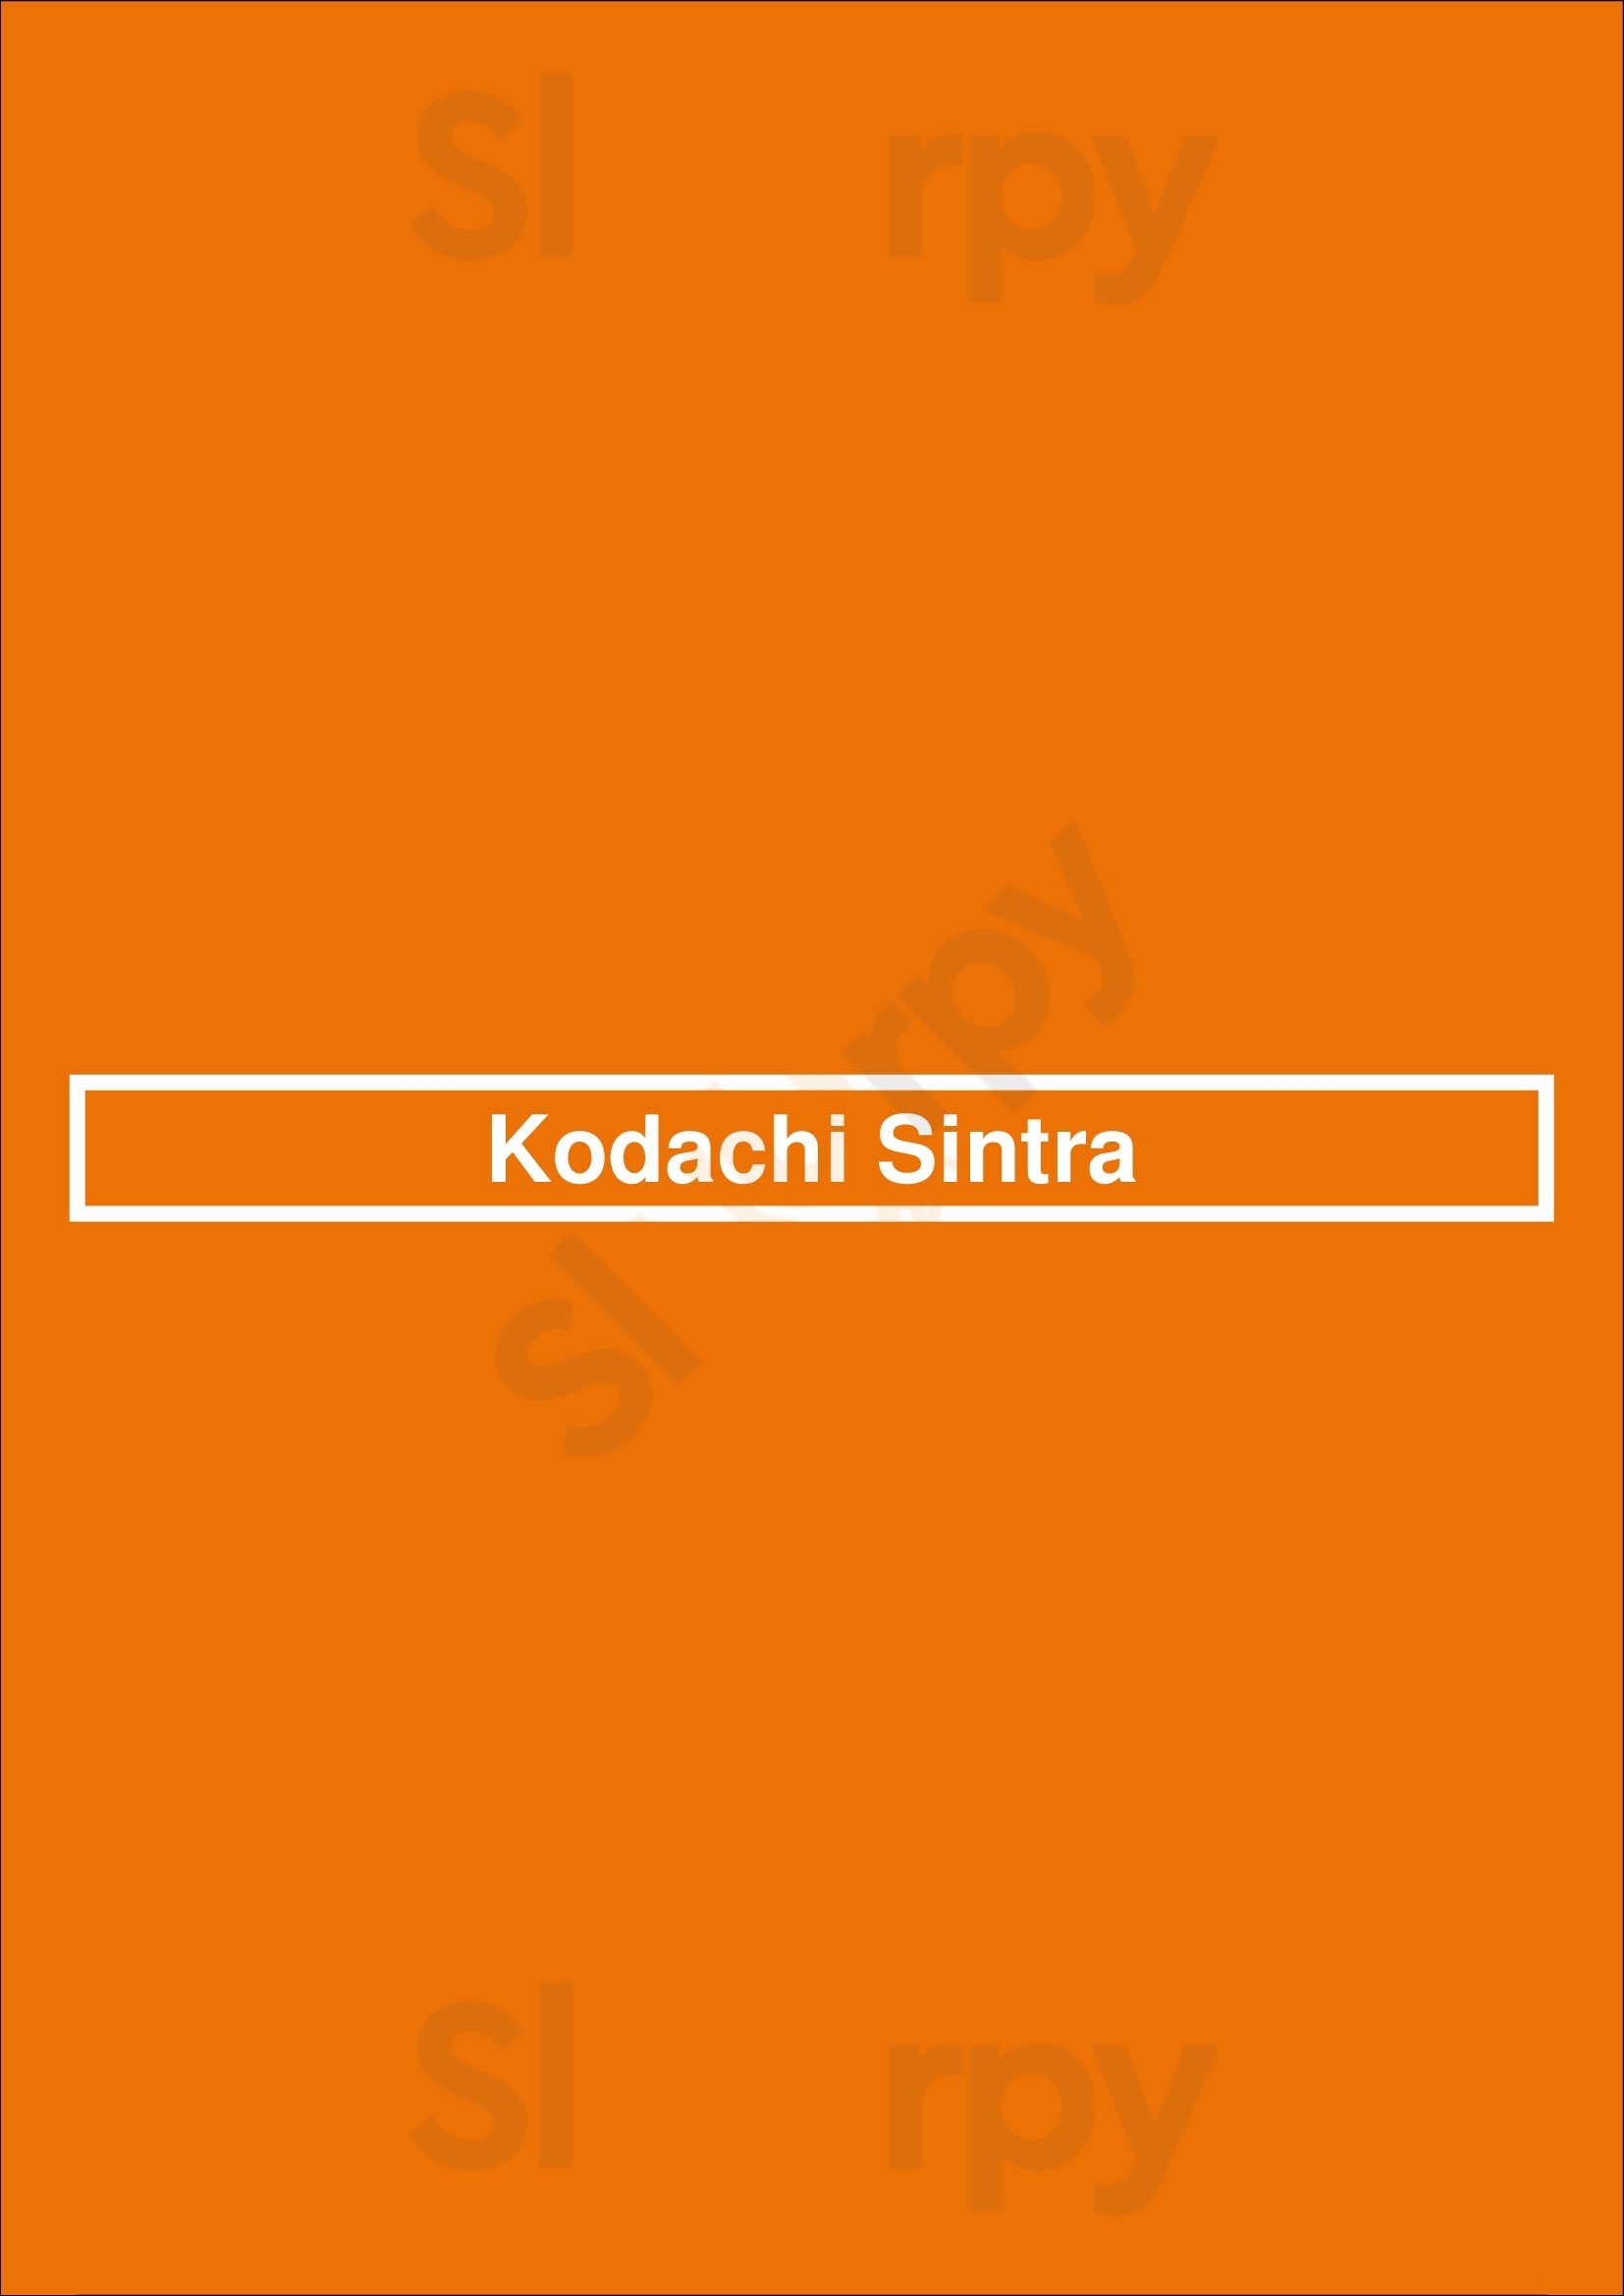 Kodachi Sintra Sintra Menu - 1